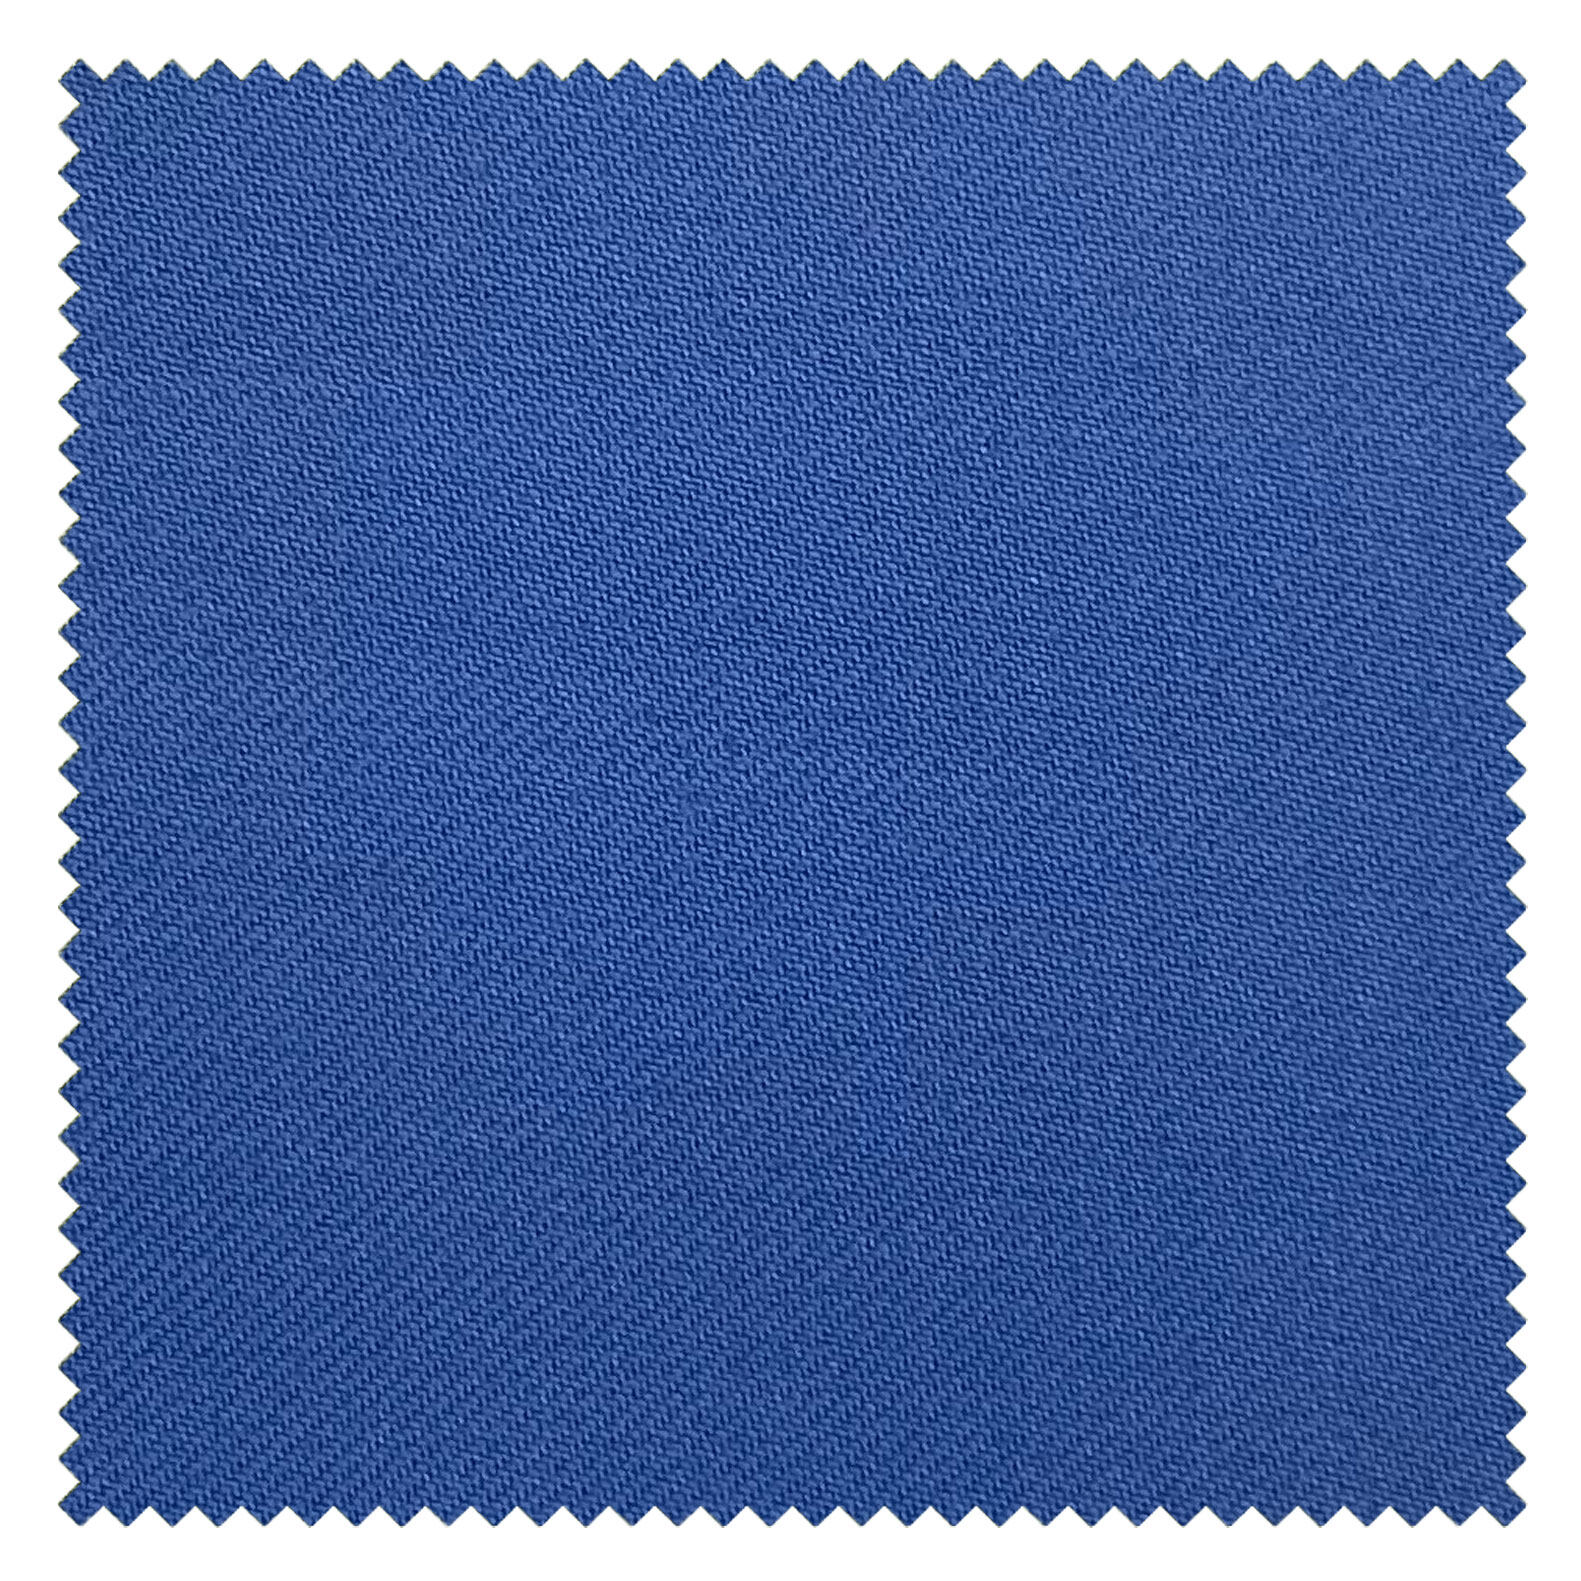 KINGMAN Cashmere Wool Fabric Royal Elegant BLUE SKY ผ้าตัดชุดสูท สีฟ้า กางเกง ผู้ชาย ผ้าตัดเสื้อ ยูนิฟอร์ม ผ้าวูล ผ้าคุณภาพดี กว้าง 60 นิ้ว ยาว 1 เมตร